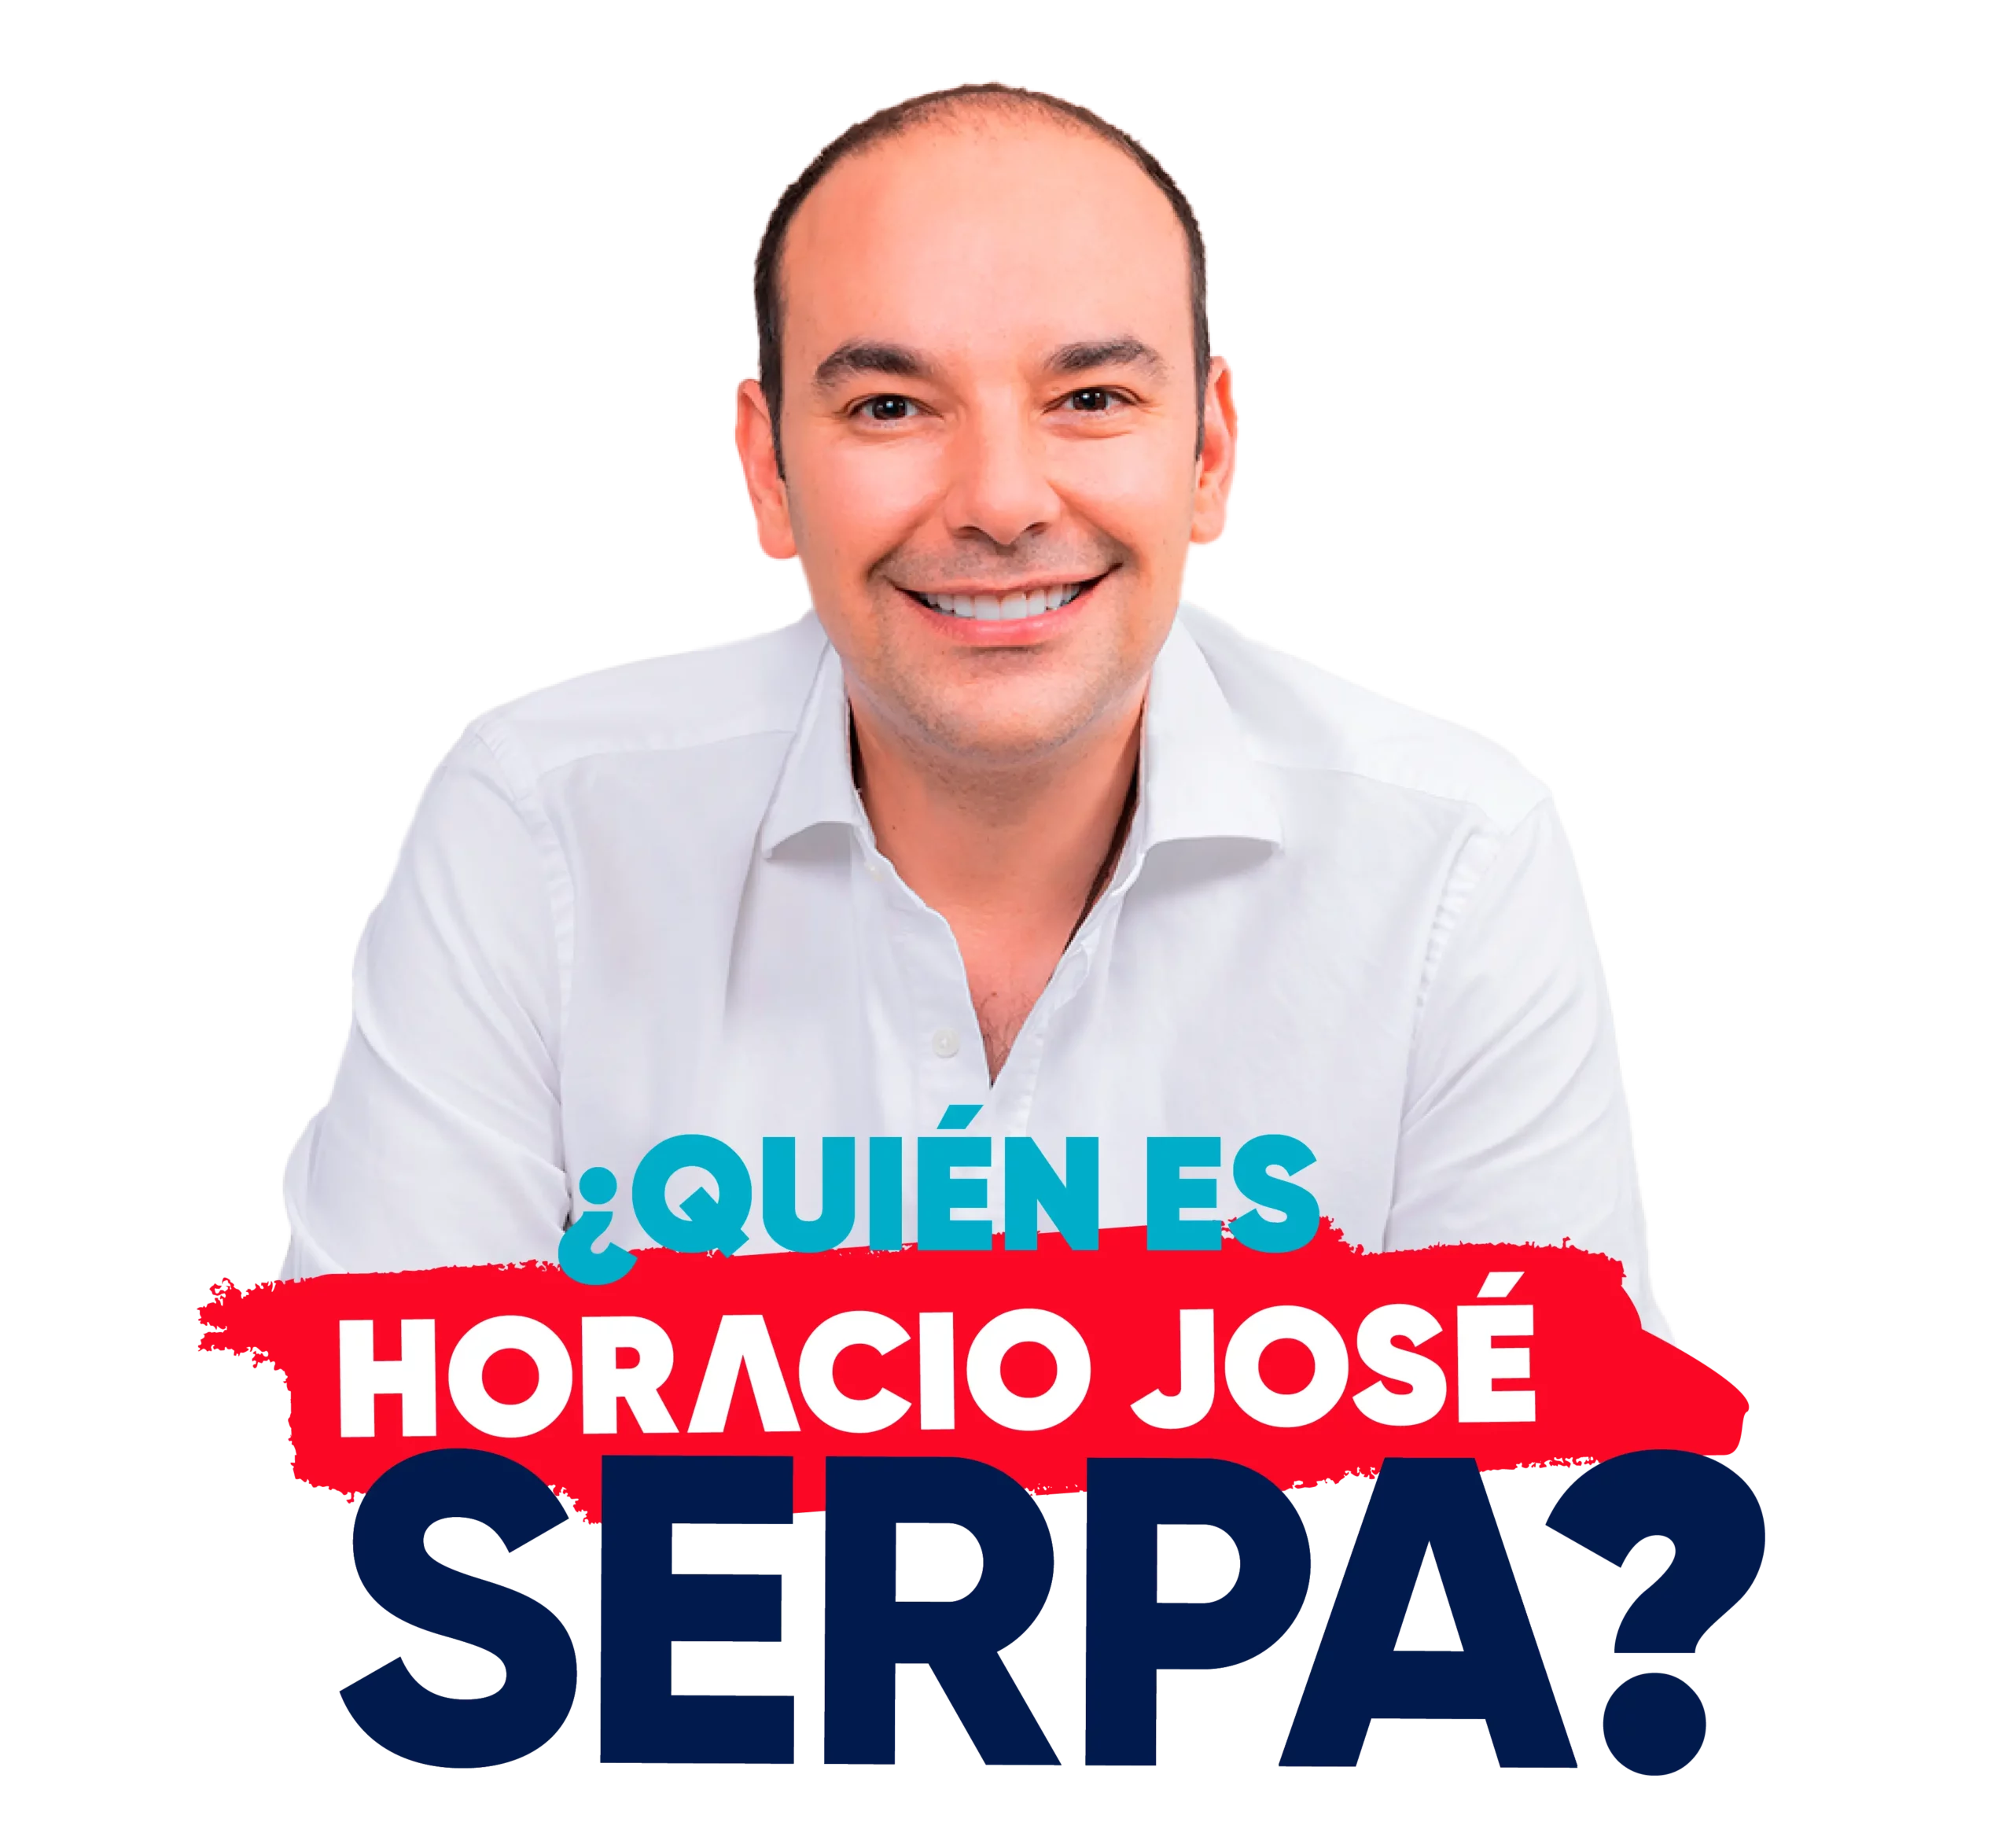 Horacio José Serpa